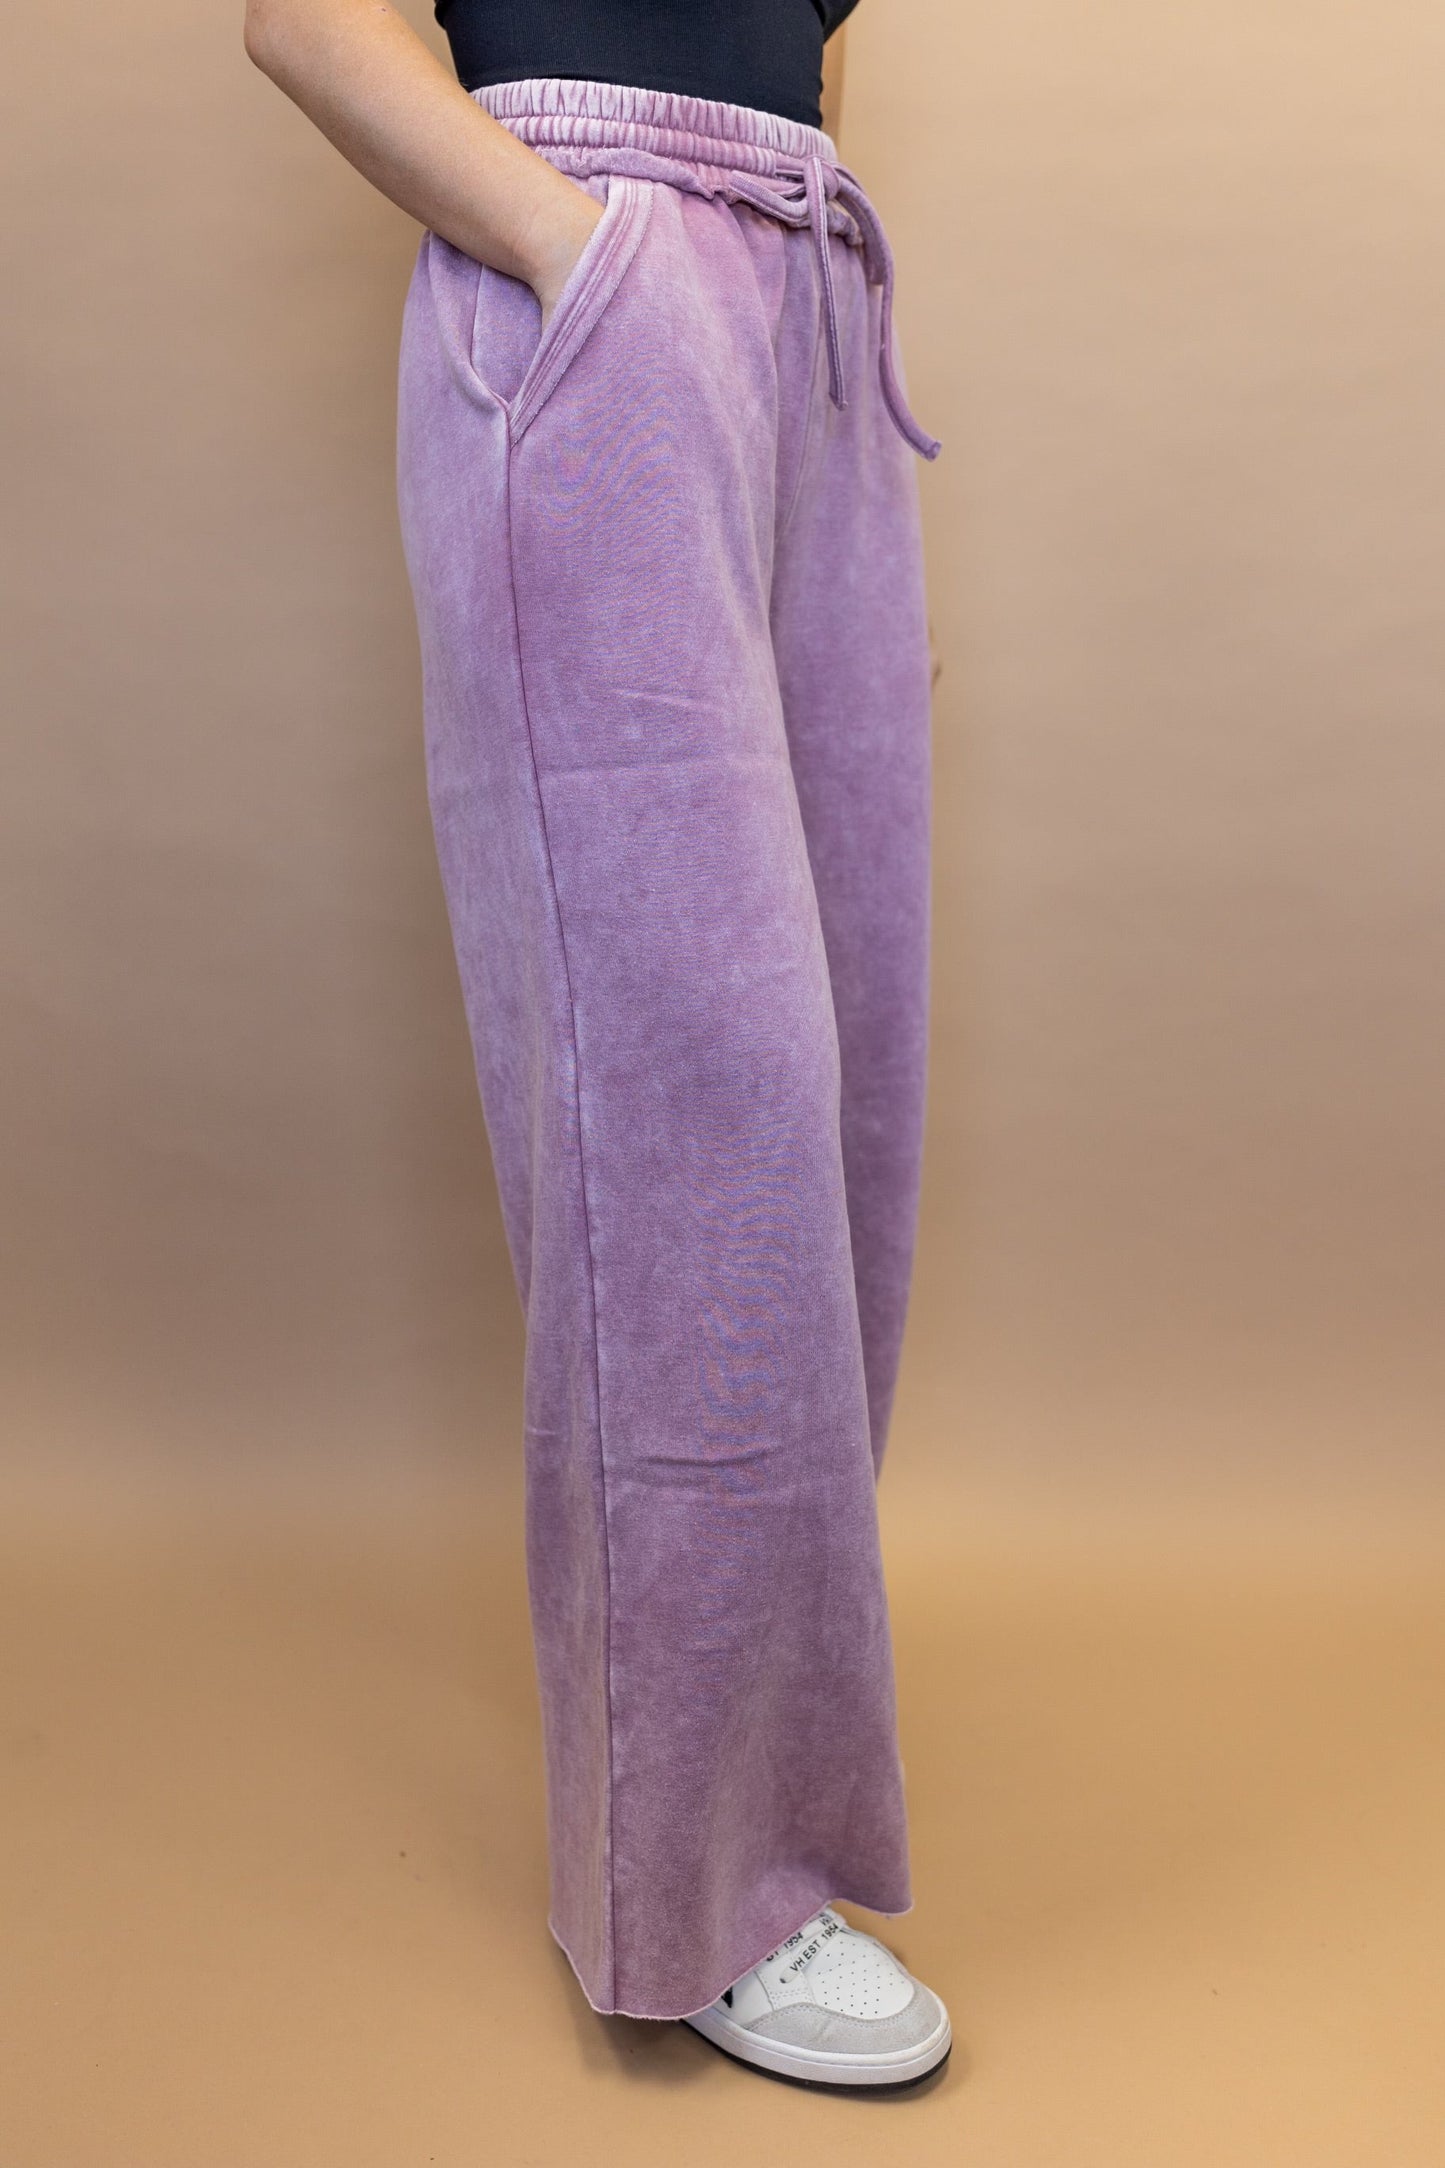 Nona Drawstring Pants in Lilac